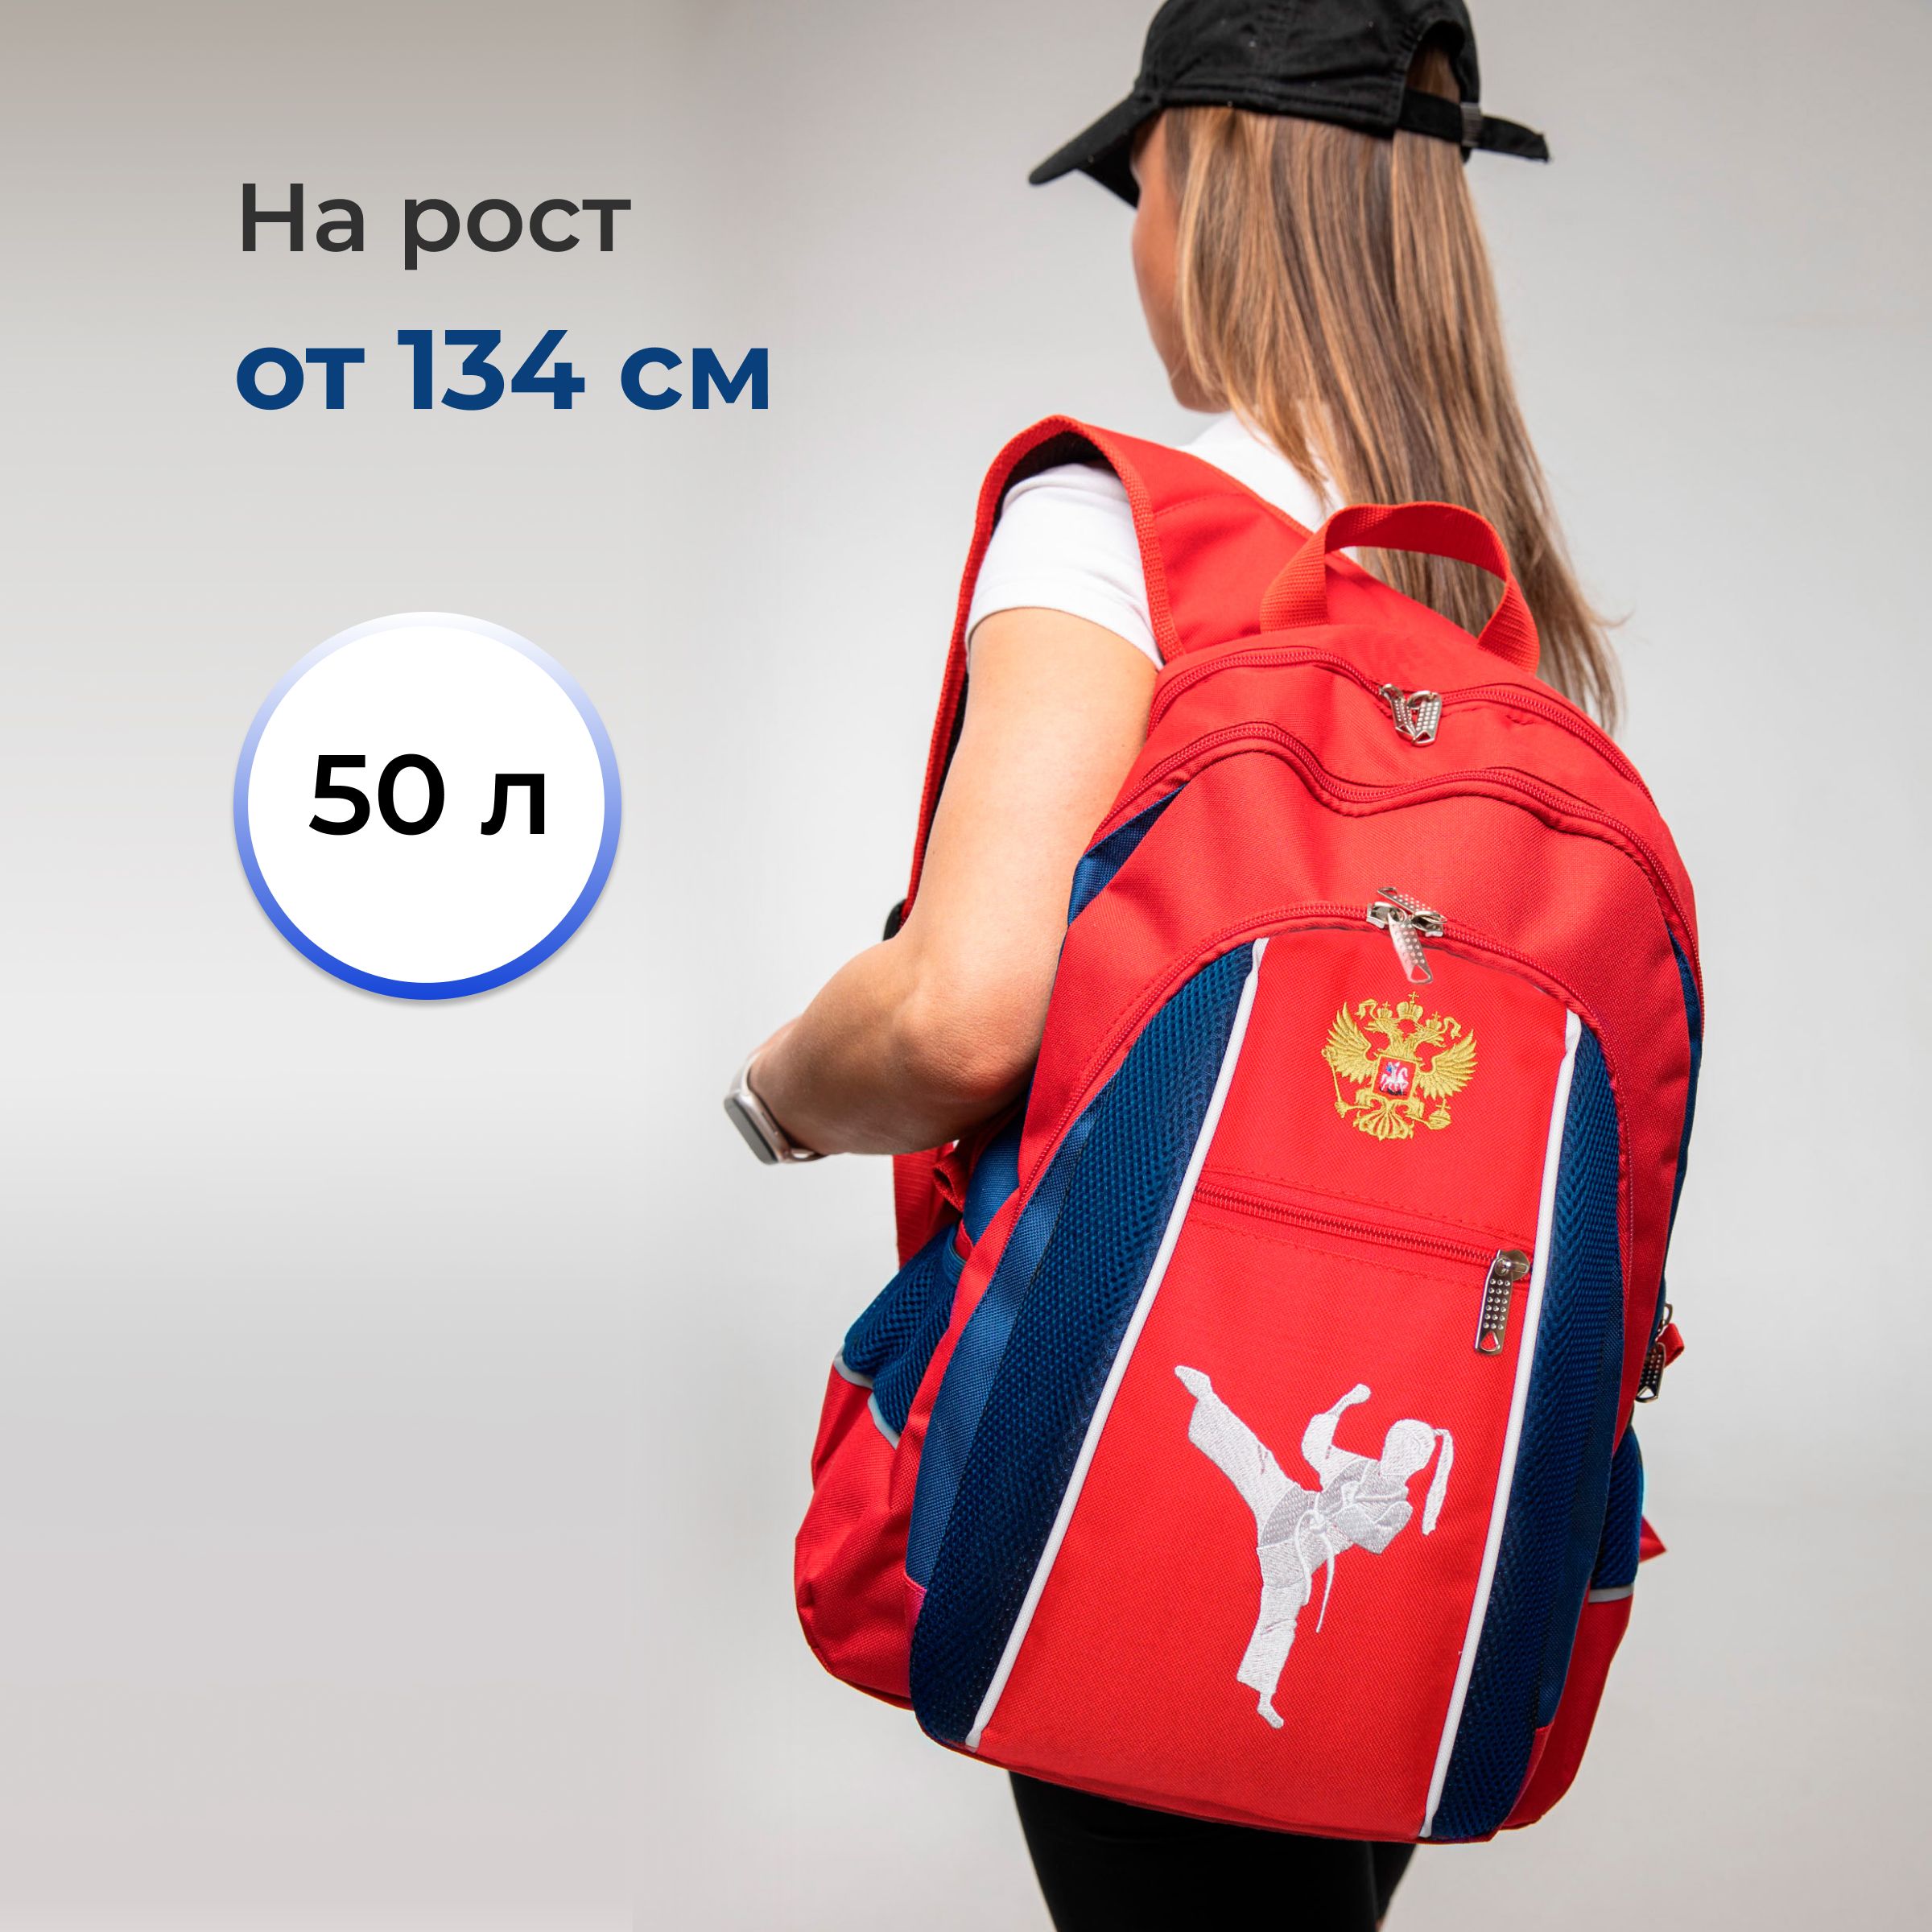 Спортивный рюкзак для девочки VincoBag для карате, в школу с вышивкой каратэ 50 литров